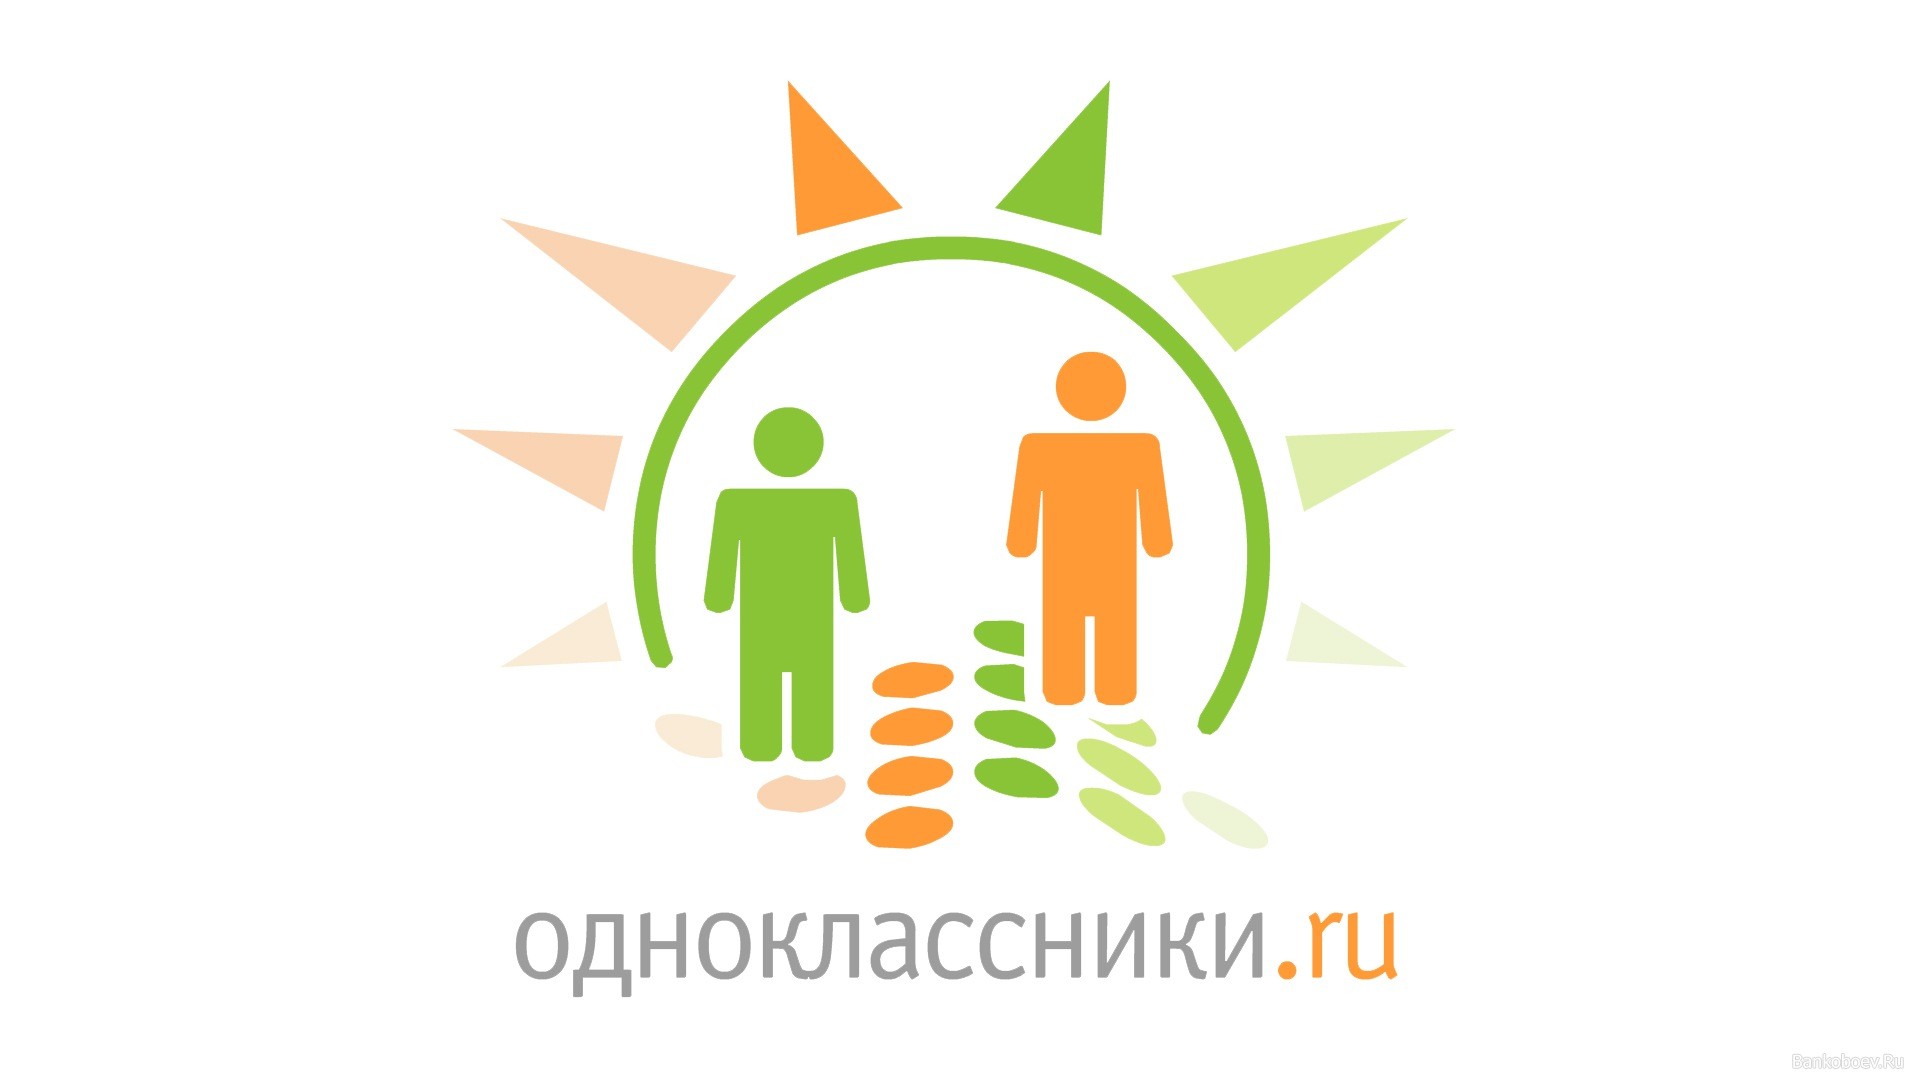 Аудитория Одноклассников выросла на 8% в 2015 году